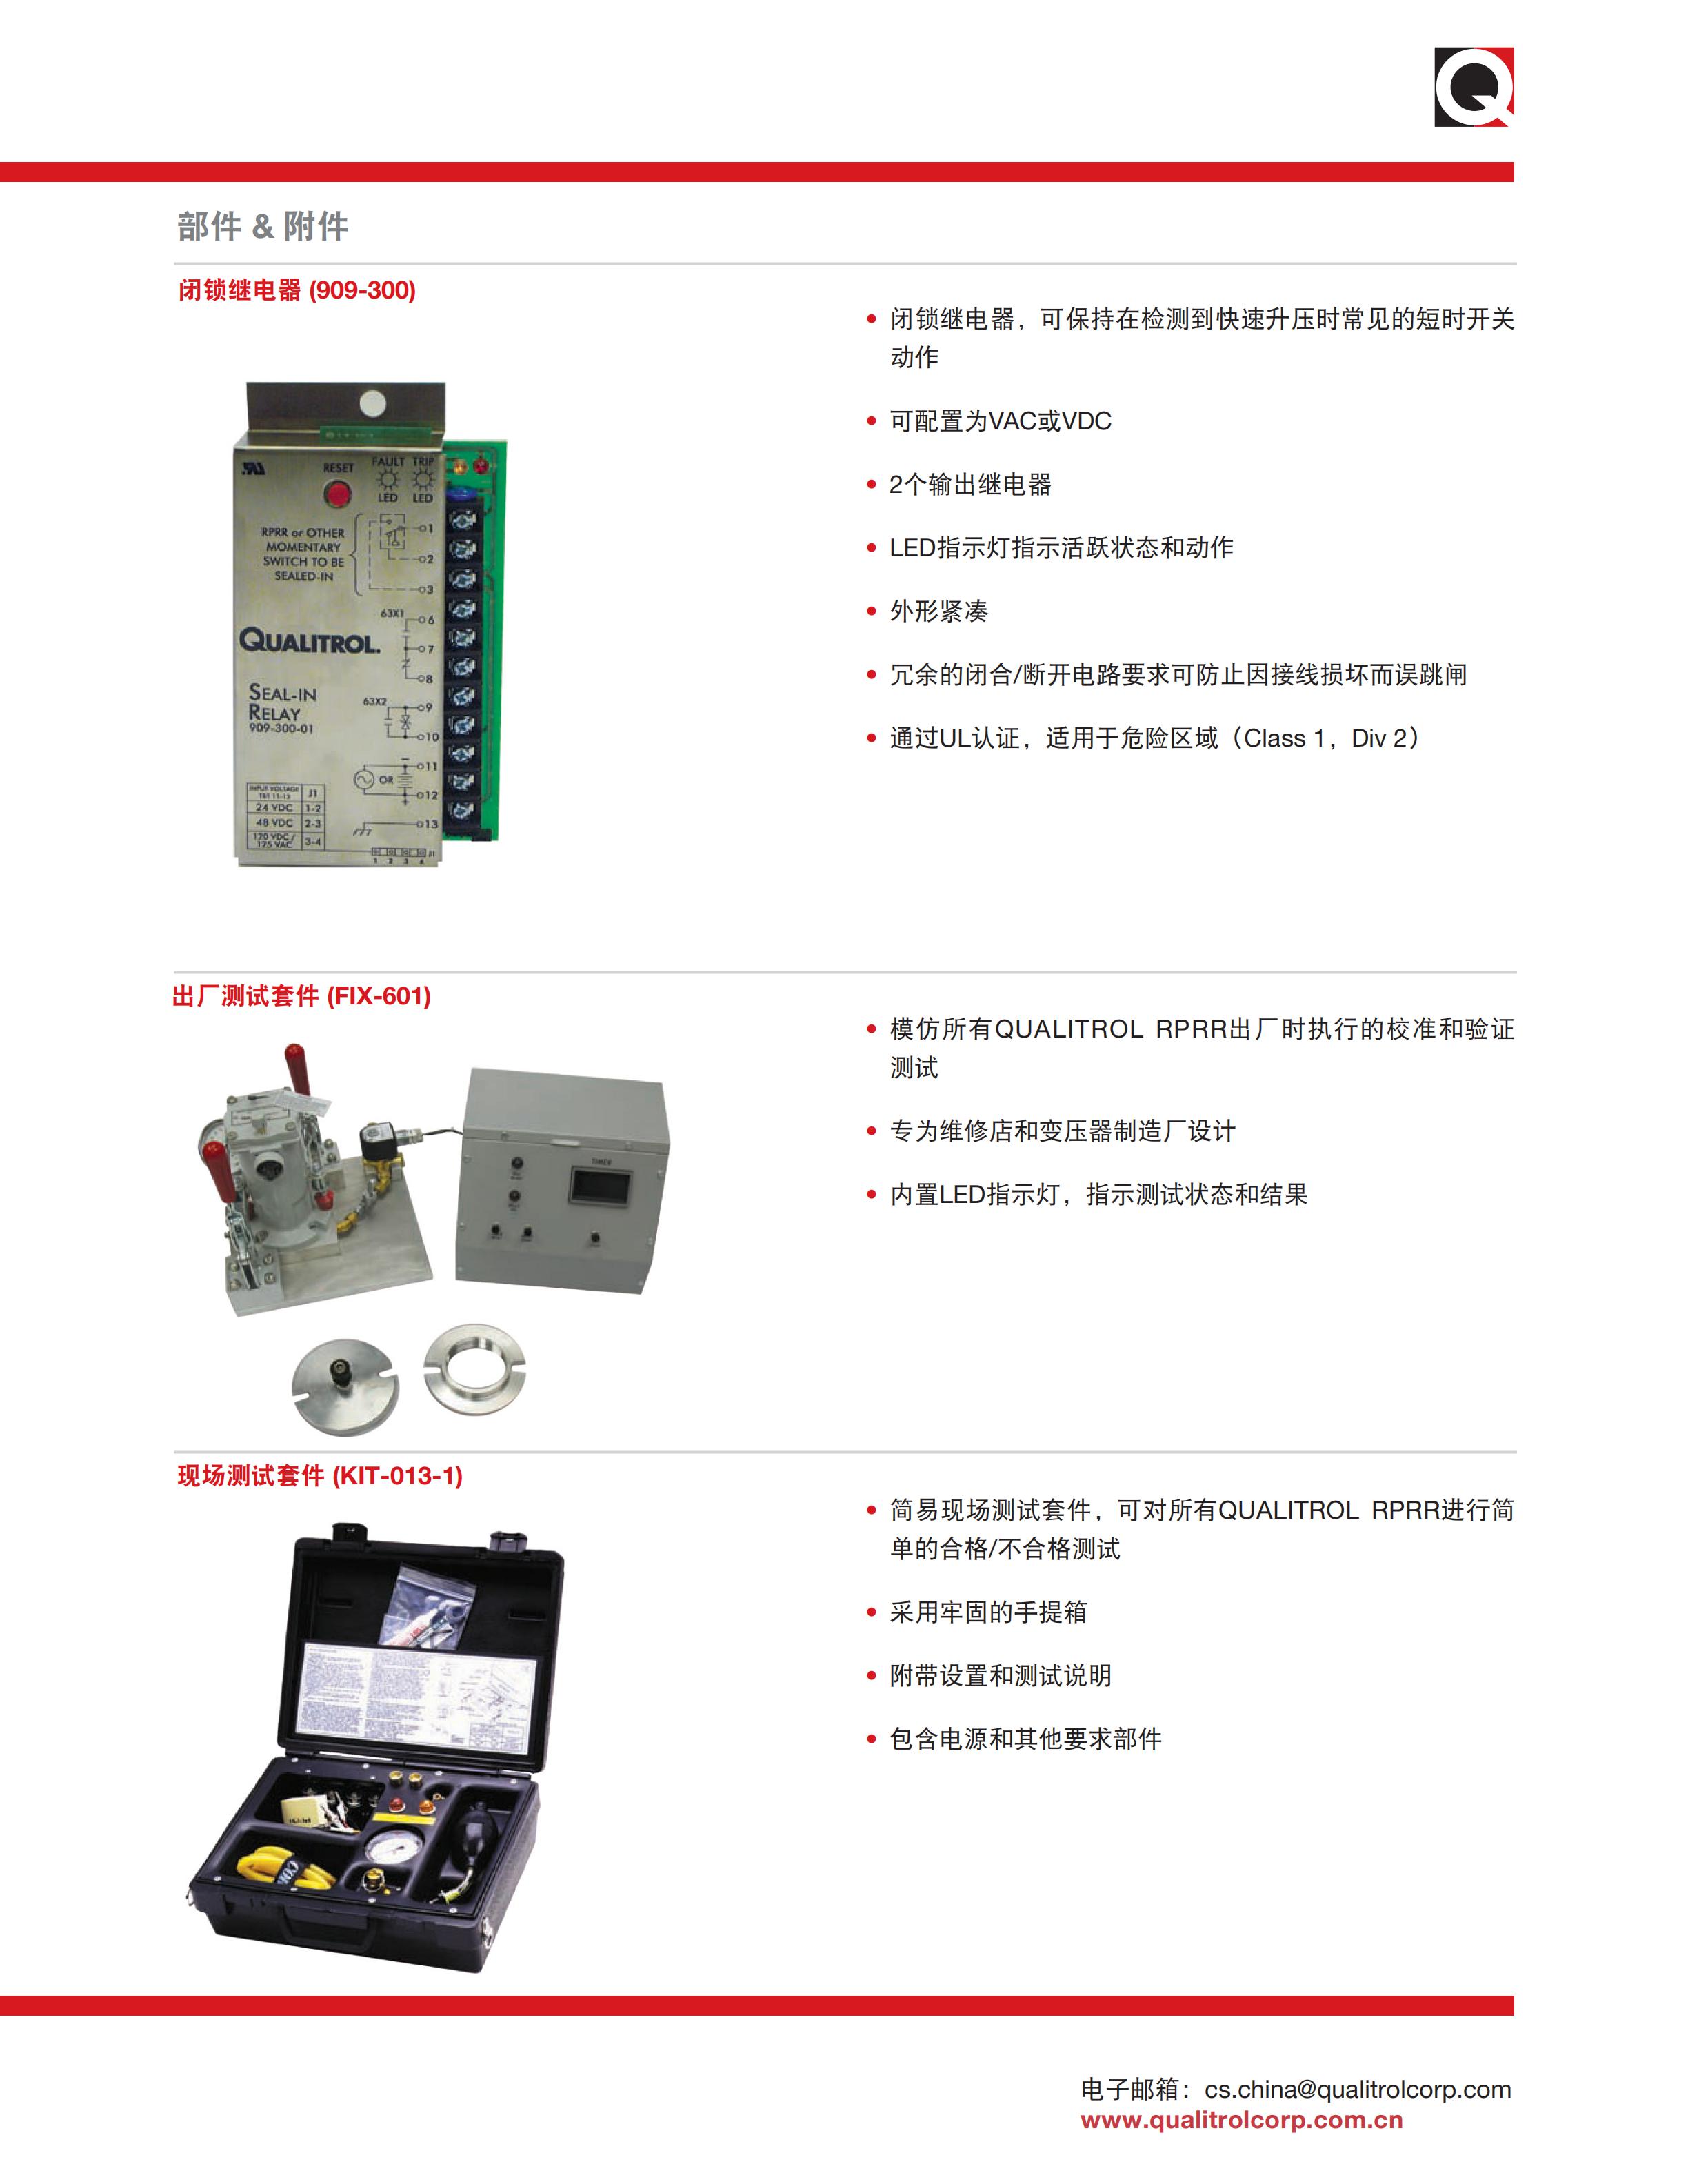 900-910突发压力继电器产品手册_03.jpg